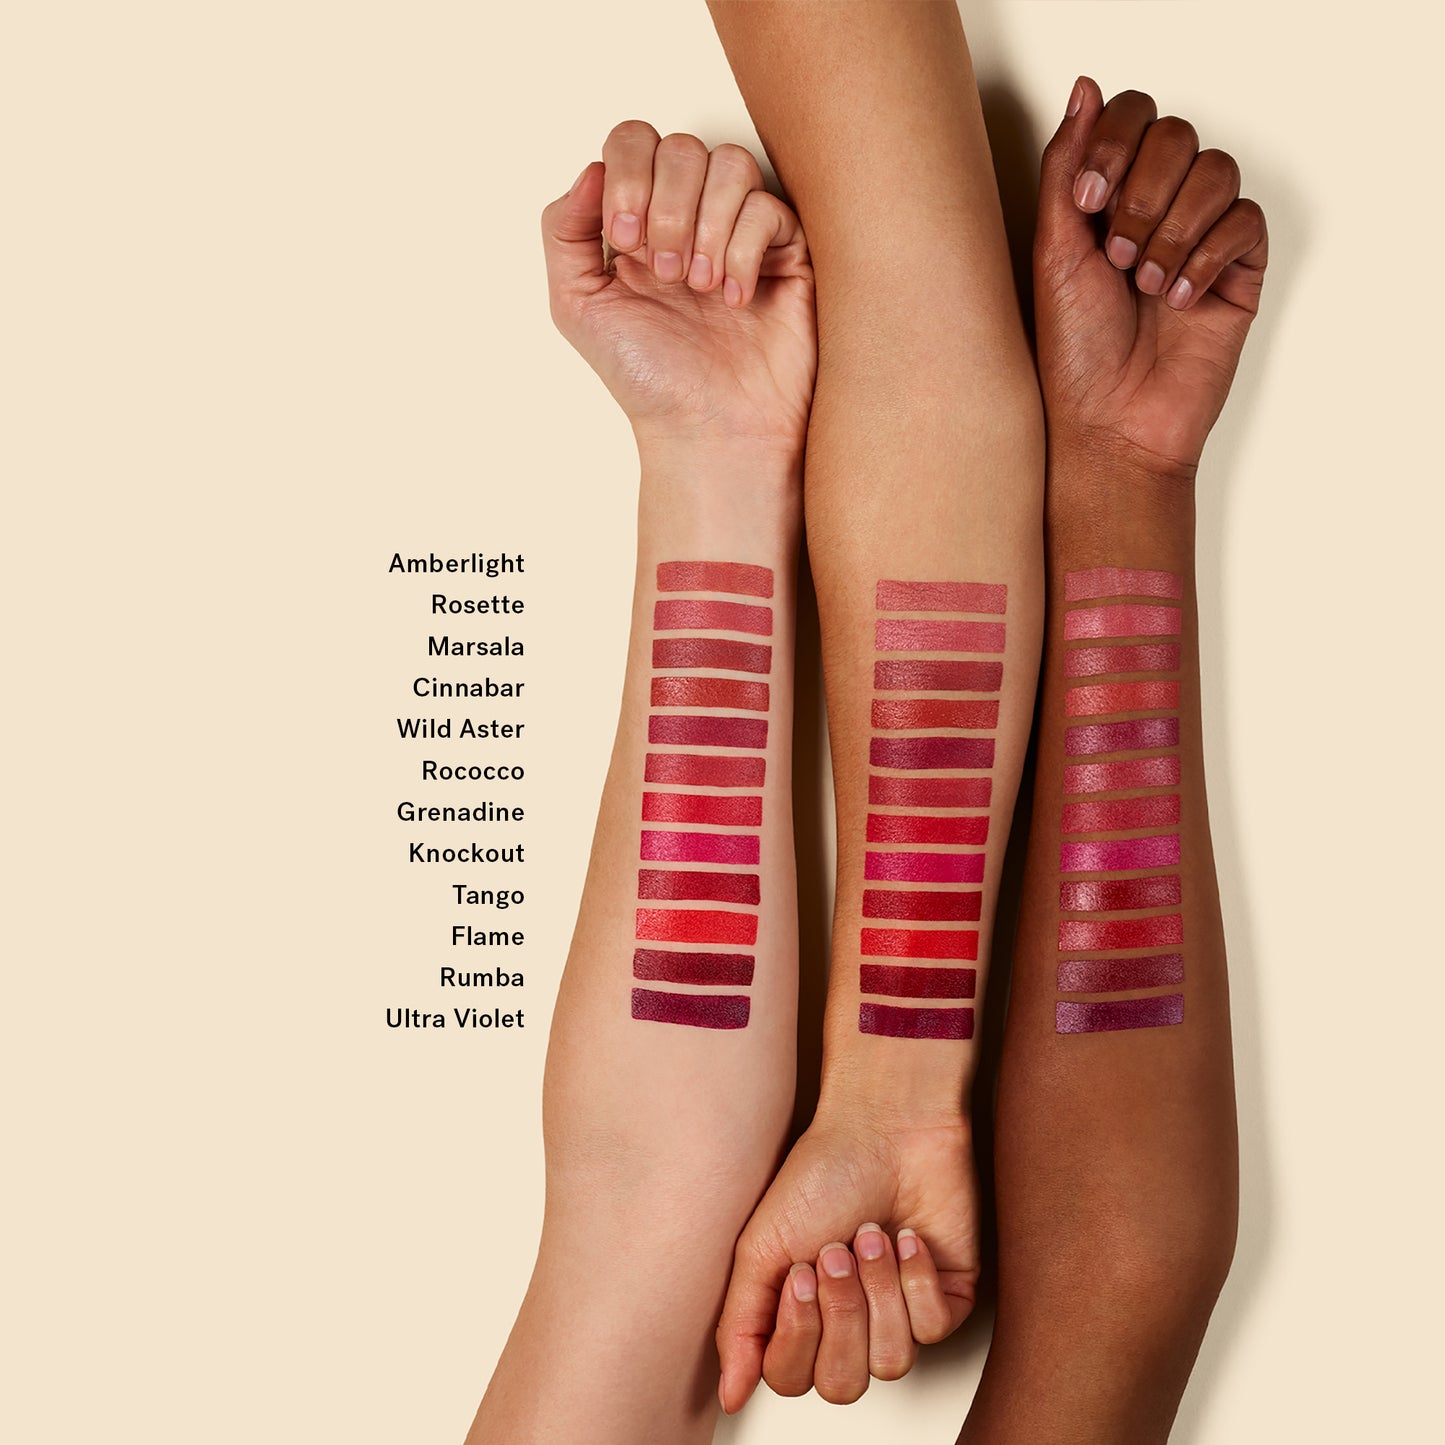 Ilia Color Block High Impact Lipstick – Tango, 4g